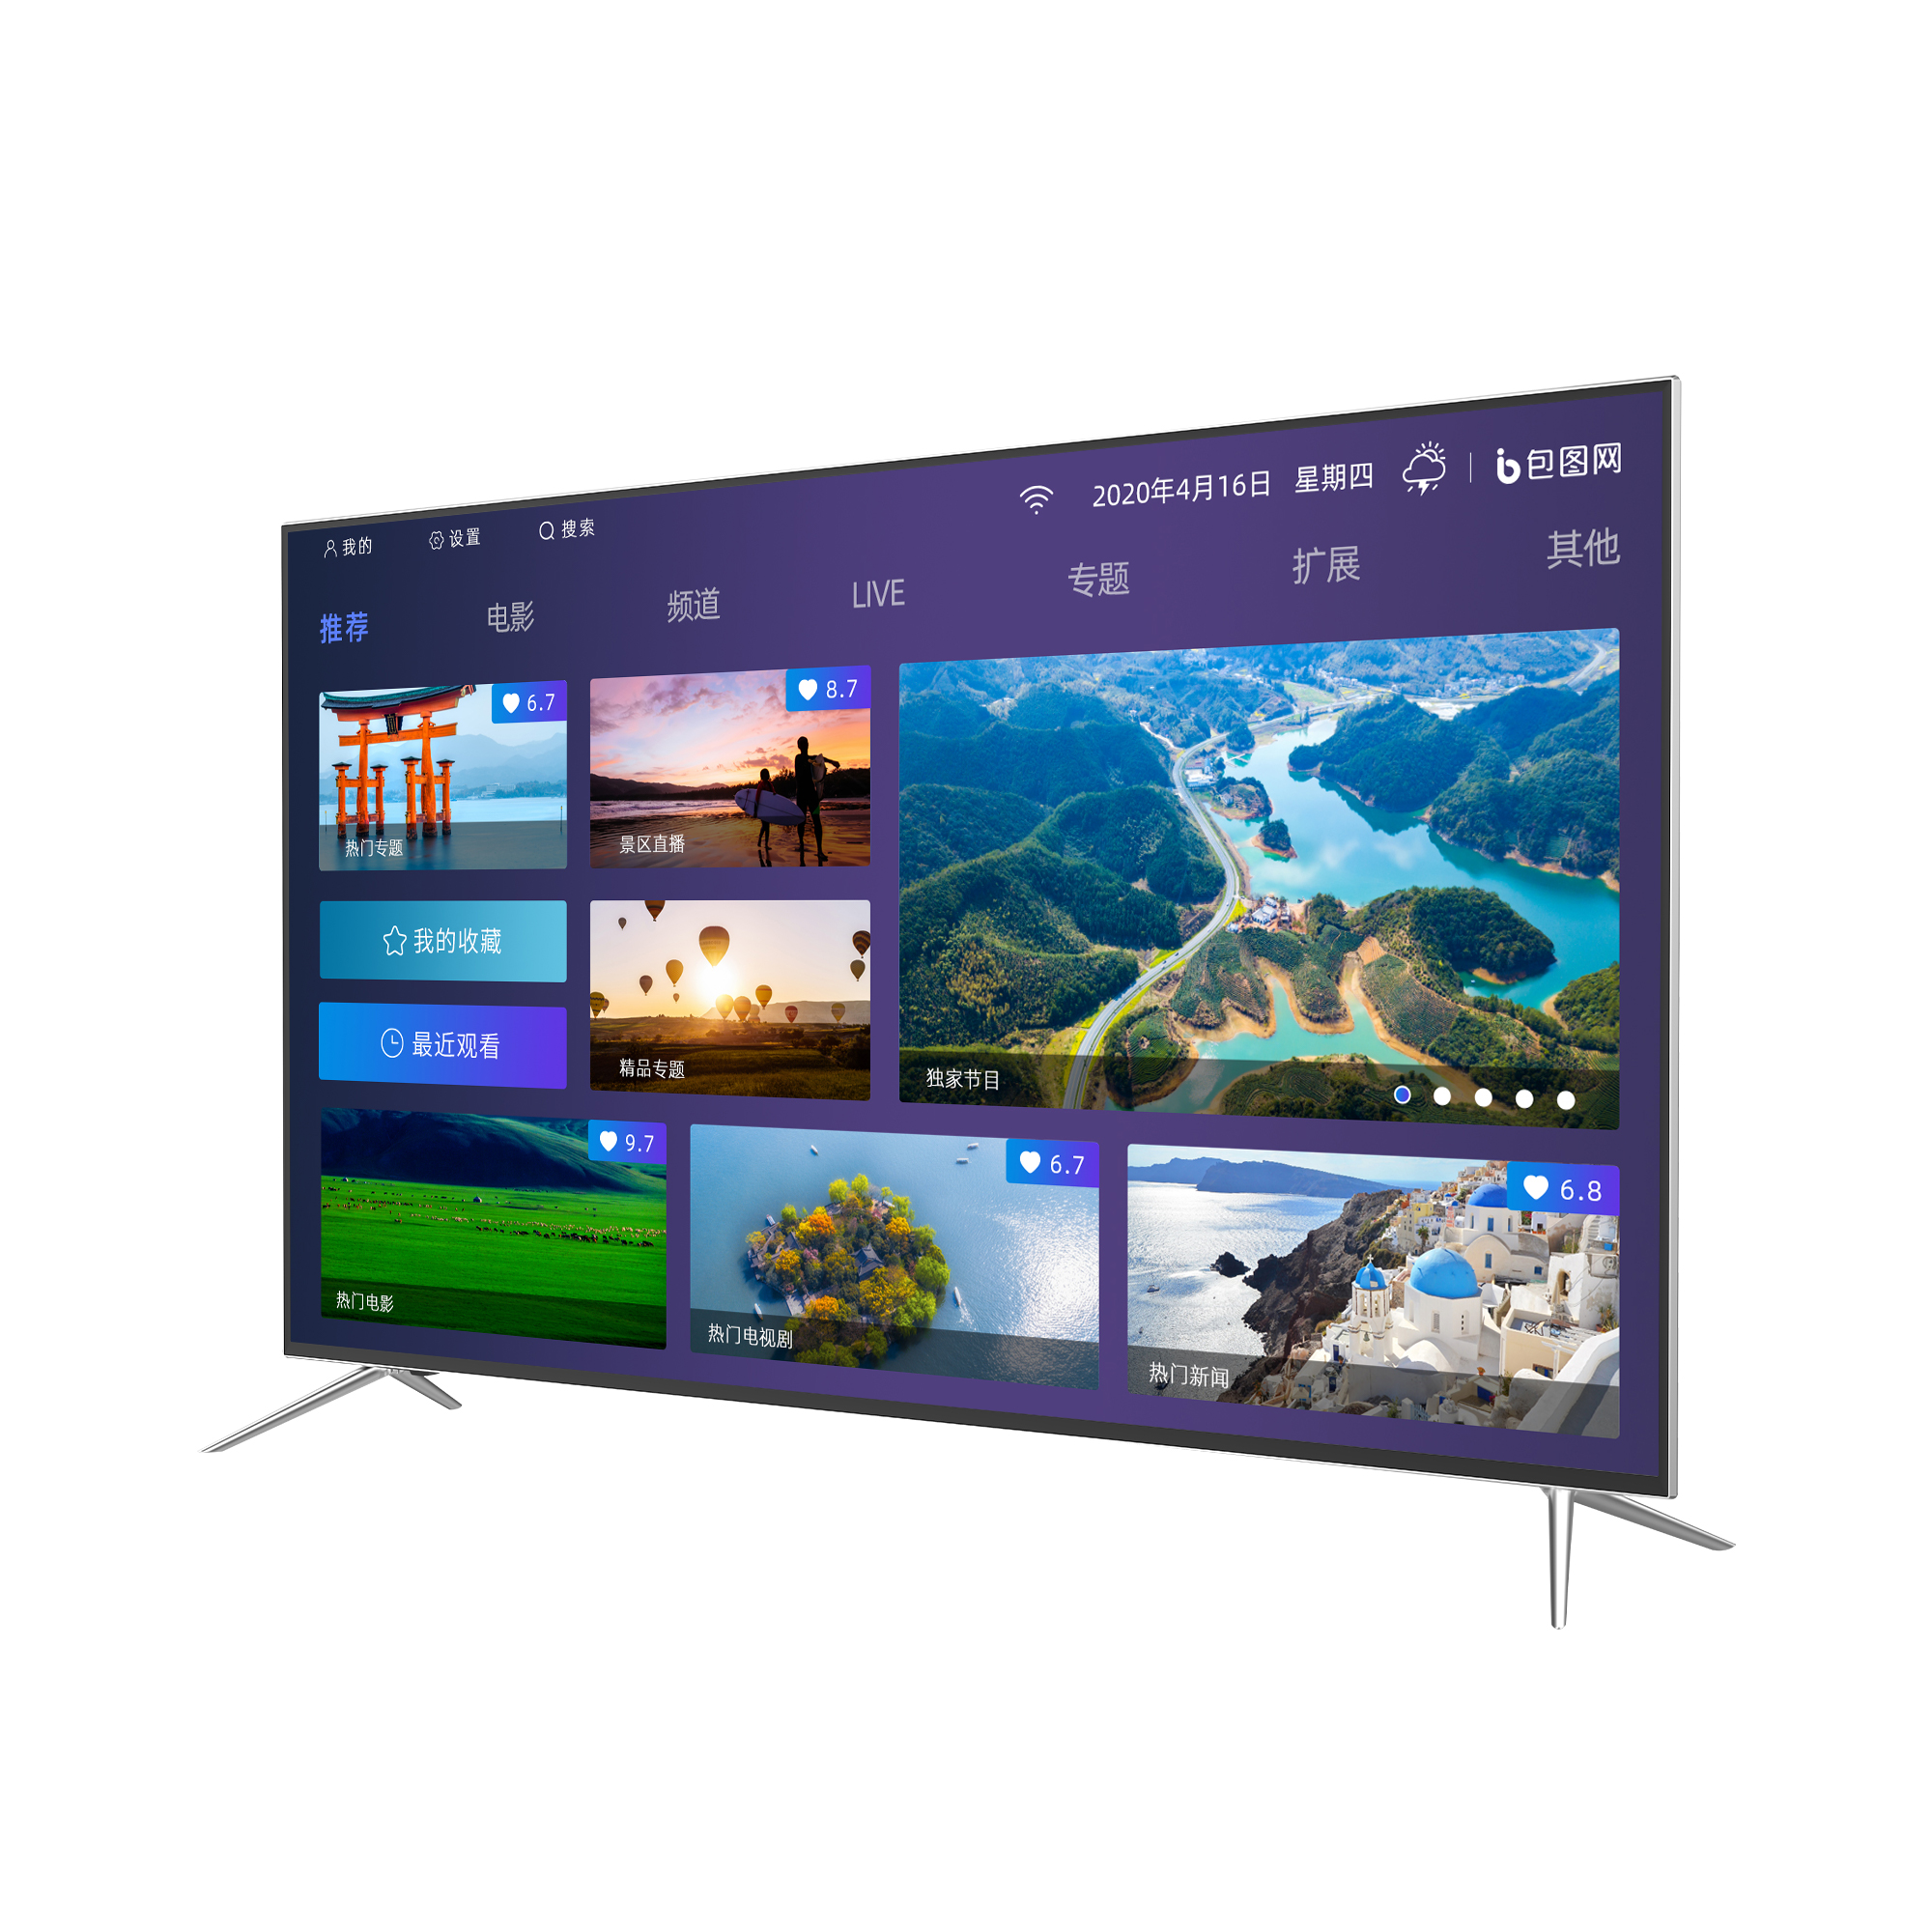 40 pulgadas de pantalla plana de Smart TV LED LCD TV HD - China